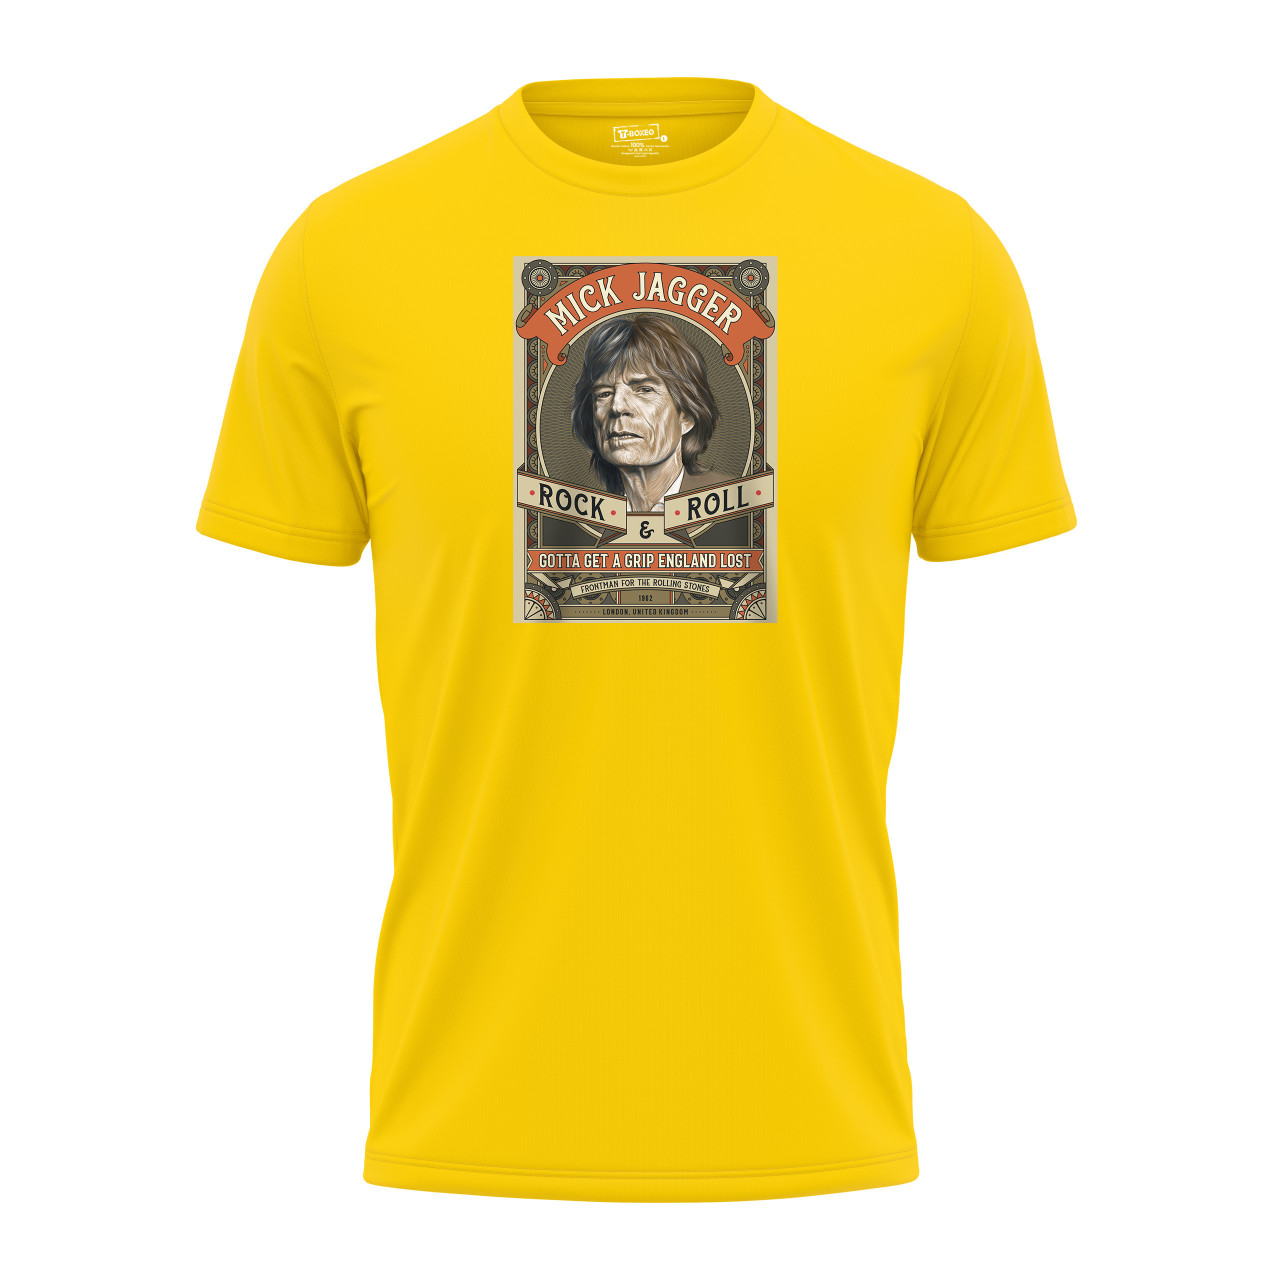 Pánské tričko s potiskem “Mick Jagger”